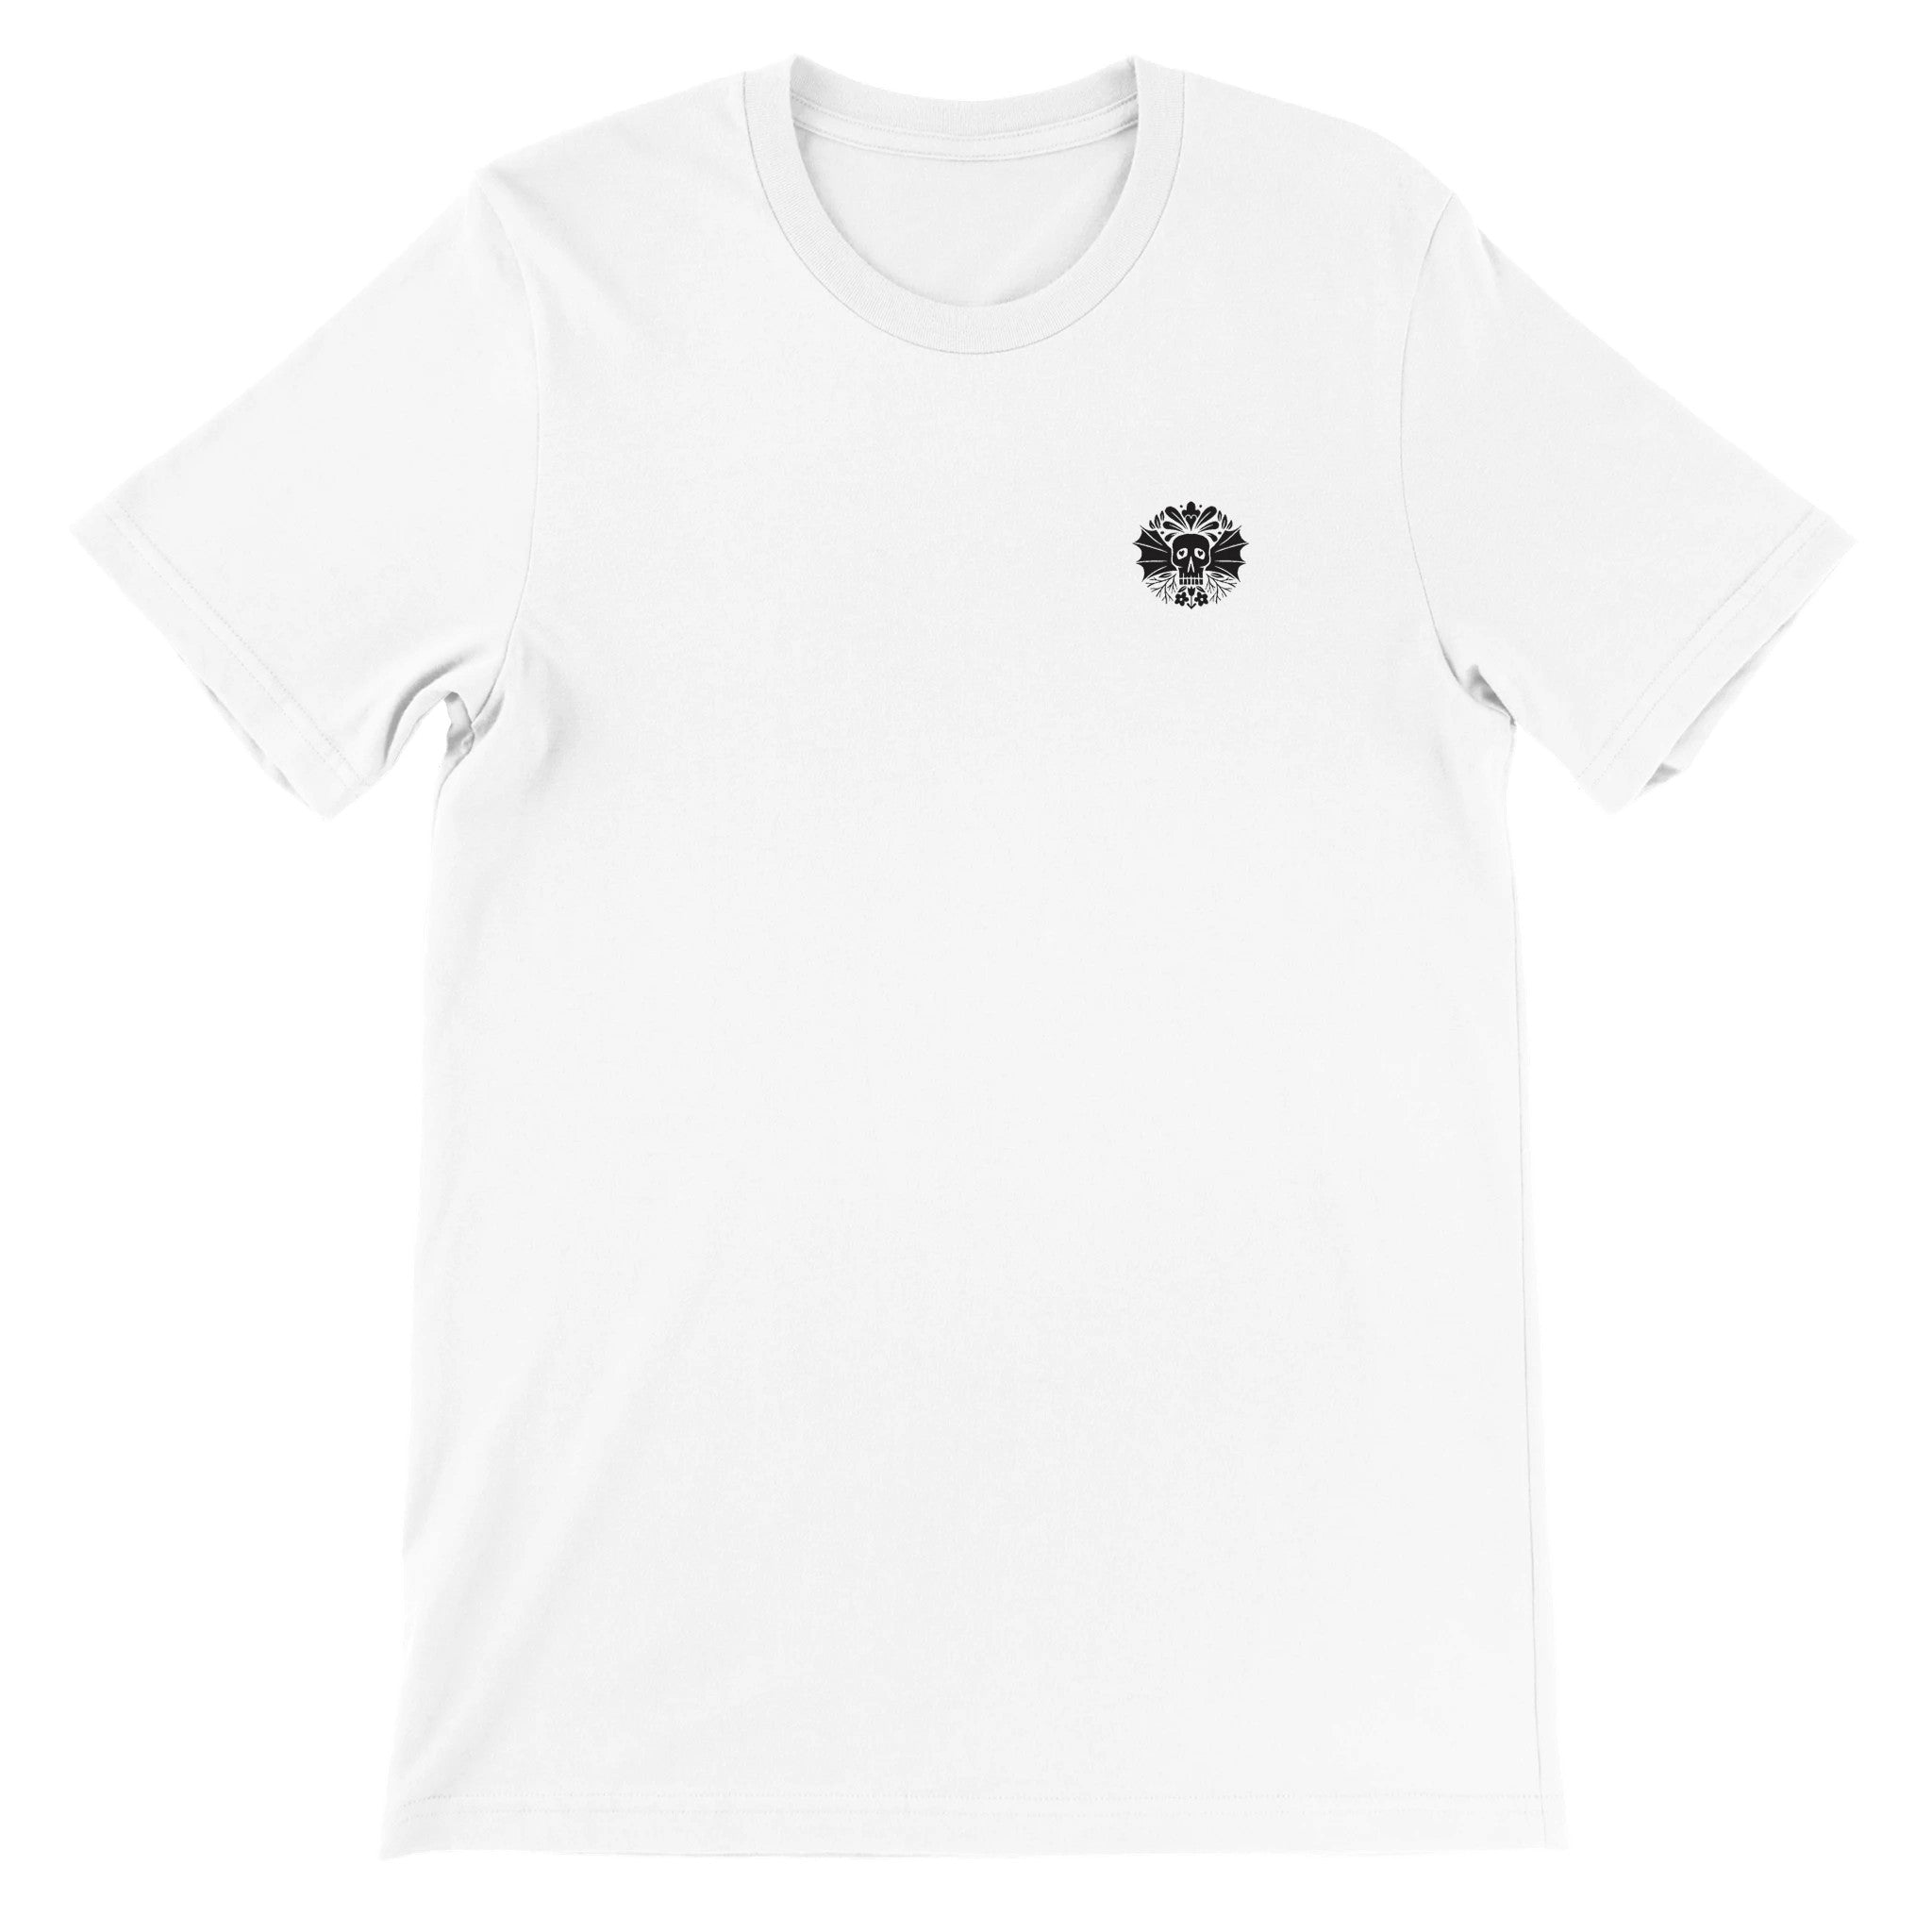 SKULL WINGS Crewneck T-shirt - Optimalprint